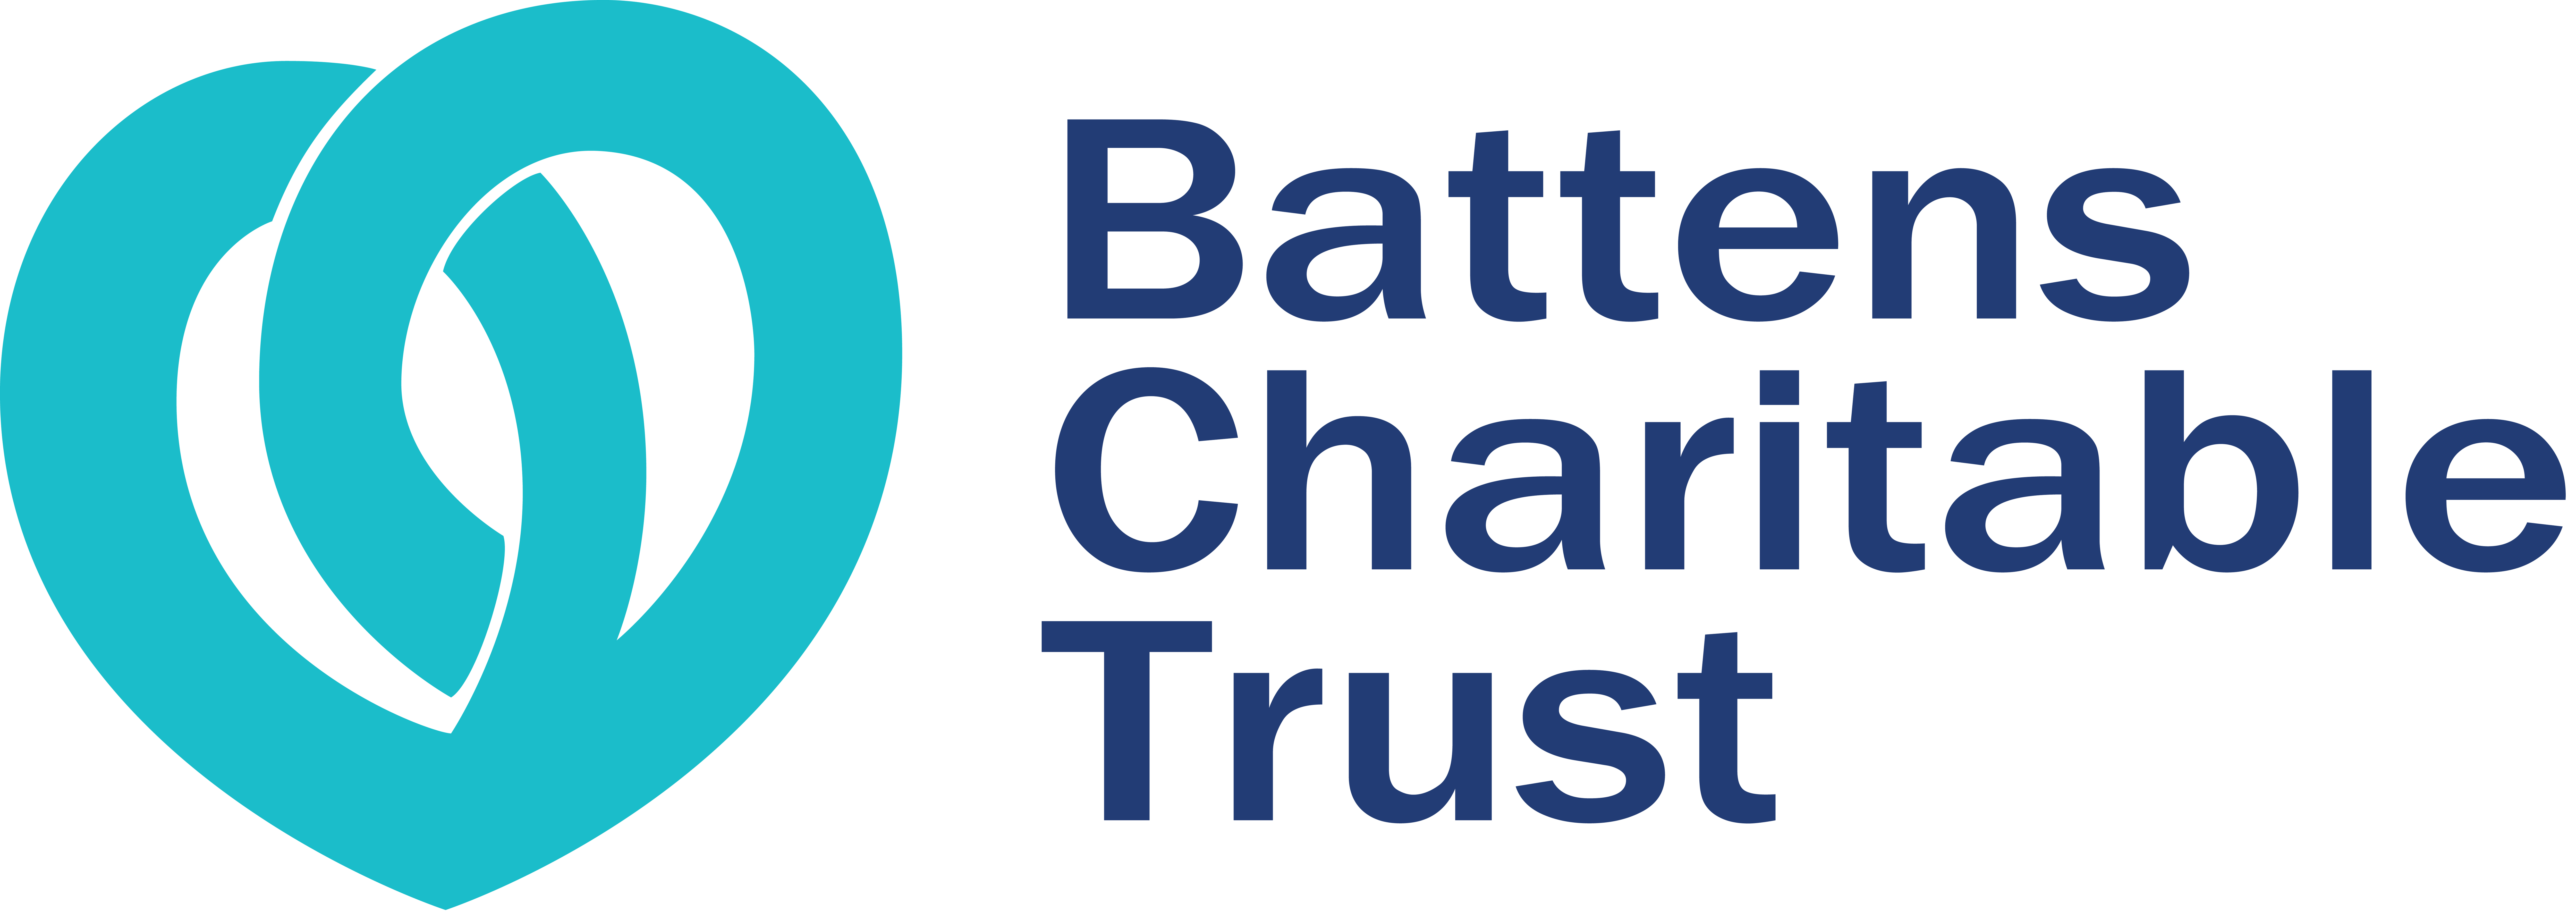 Battens Charitable Trust Logo